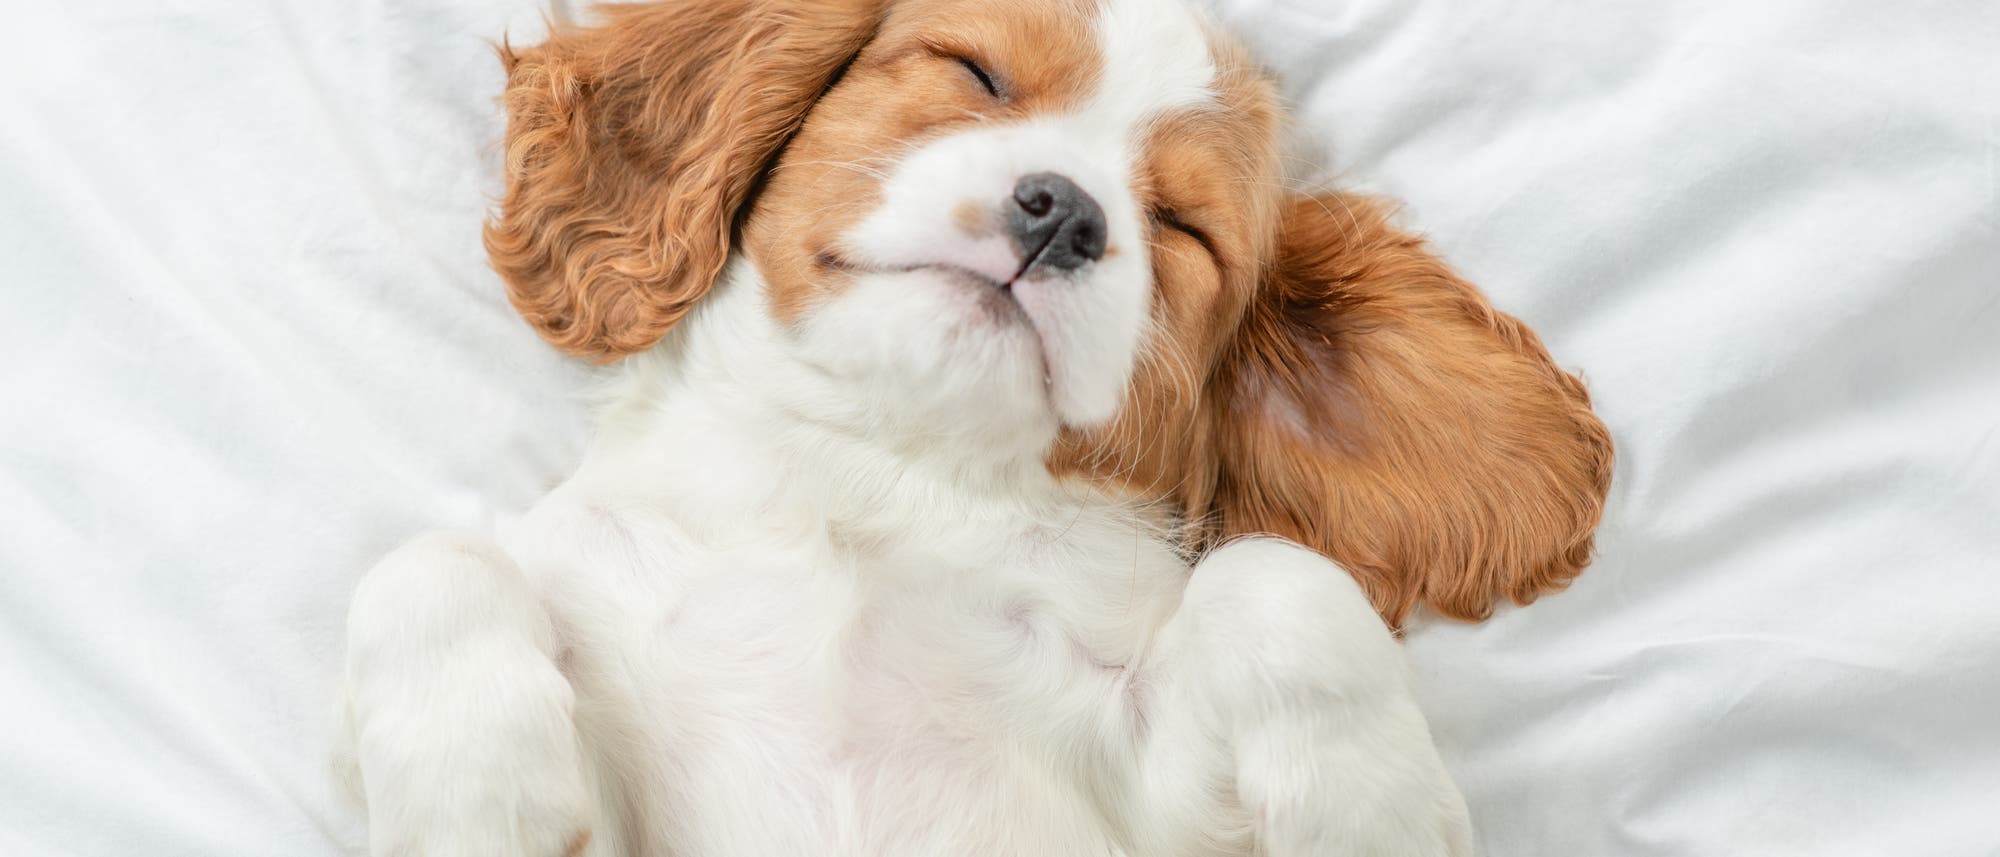 Ein weiß-brauner Hund liegt rücklings auf einer weißen Decke. Seine Augen sind geschlossen, die Pfötchen sind in die Höhe gestreckt.